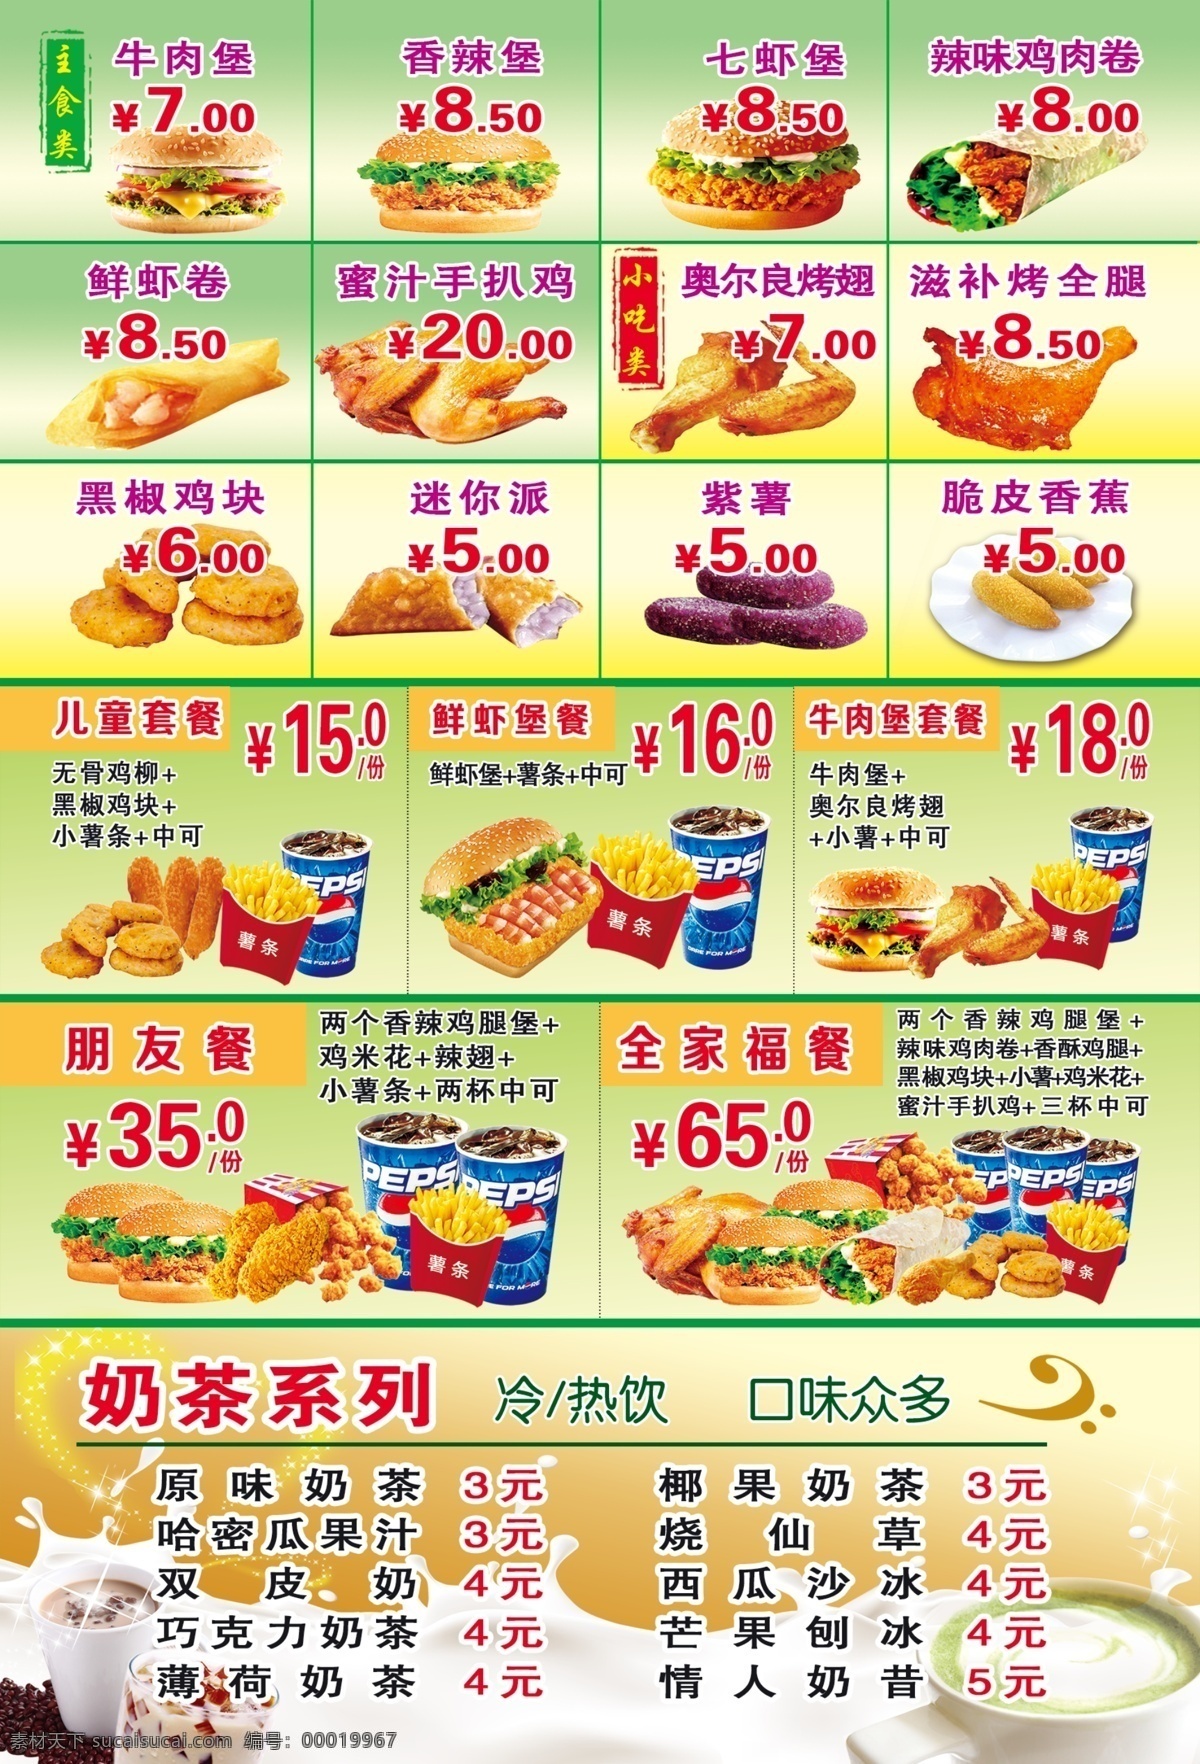 台湾小吃单张 美食 美味 炸鸡腿 汉堡 套餐 全家桶 奶茶 牛奶 单张 传单 广告 油炸 台湾小吃 黄色